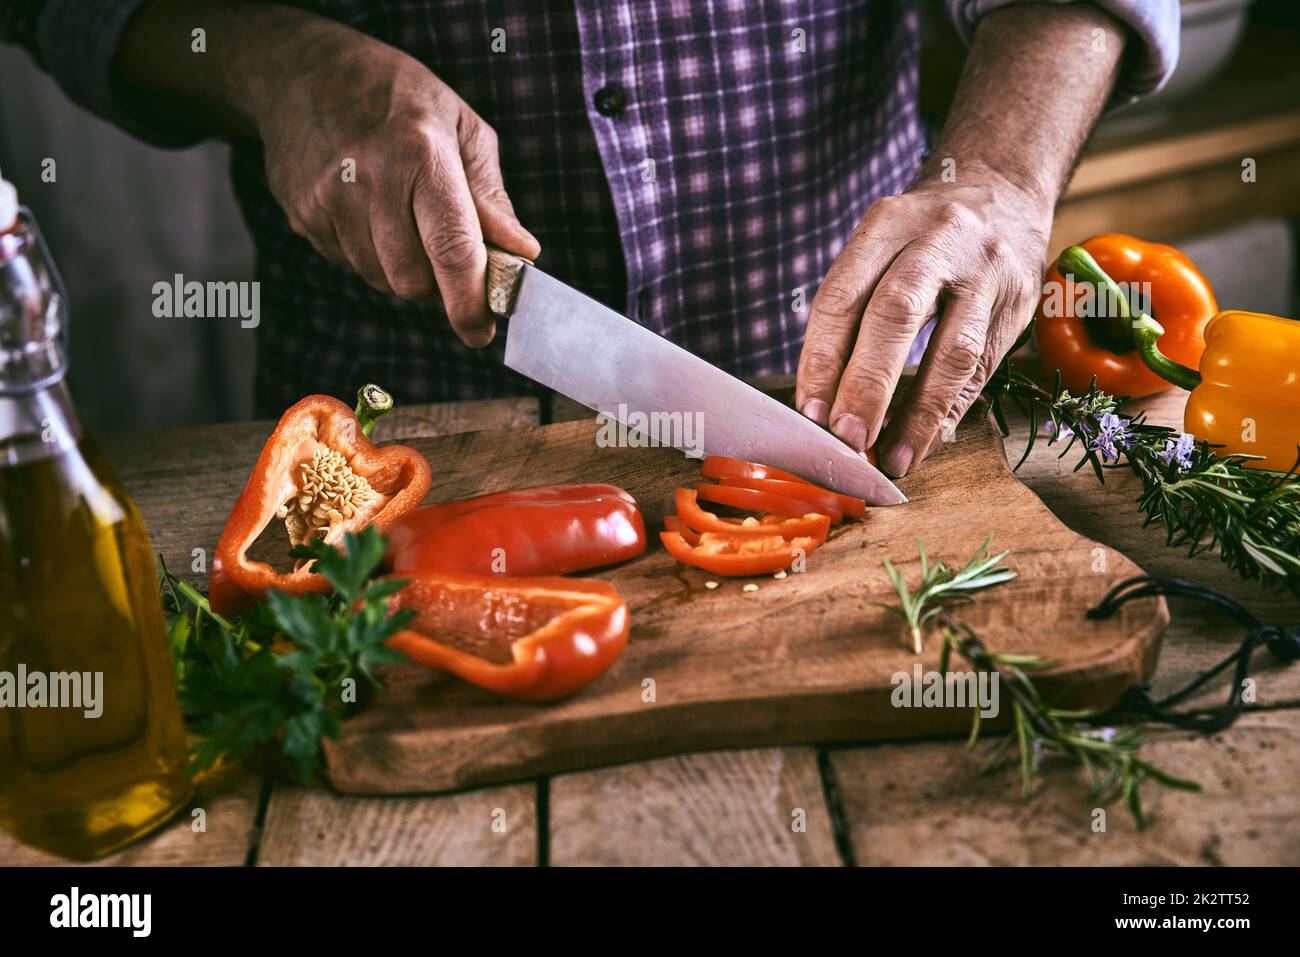 Crop uomo senza volto affettare peperone sul tagliere in cucina Foto Stock